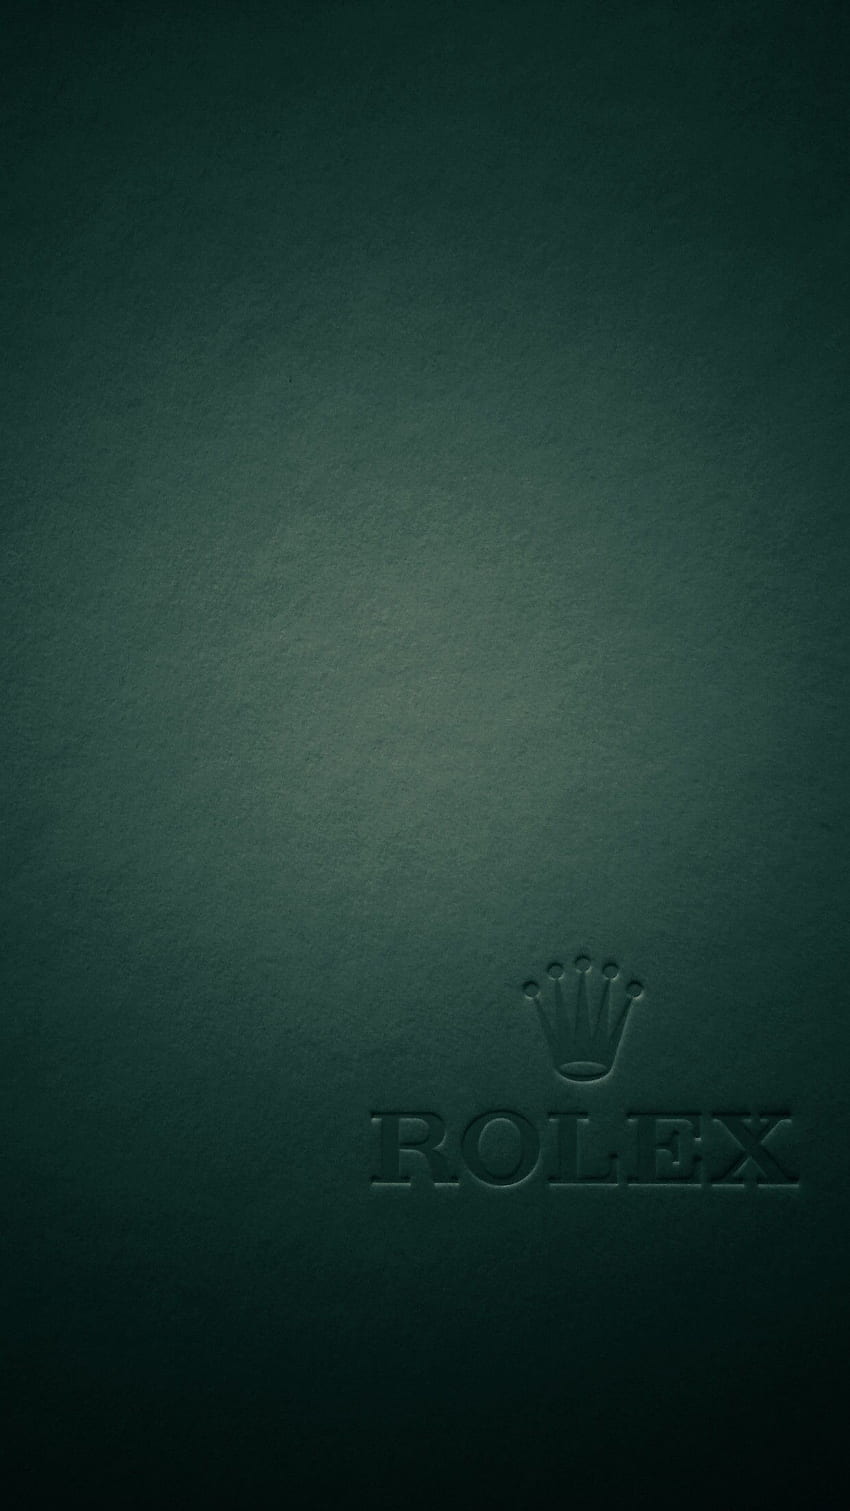 Logo Rolex, Mahkota Rolex wallpaper ponsel HD